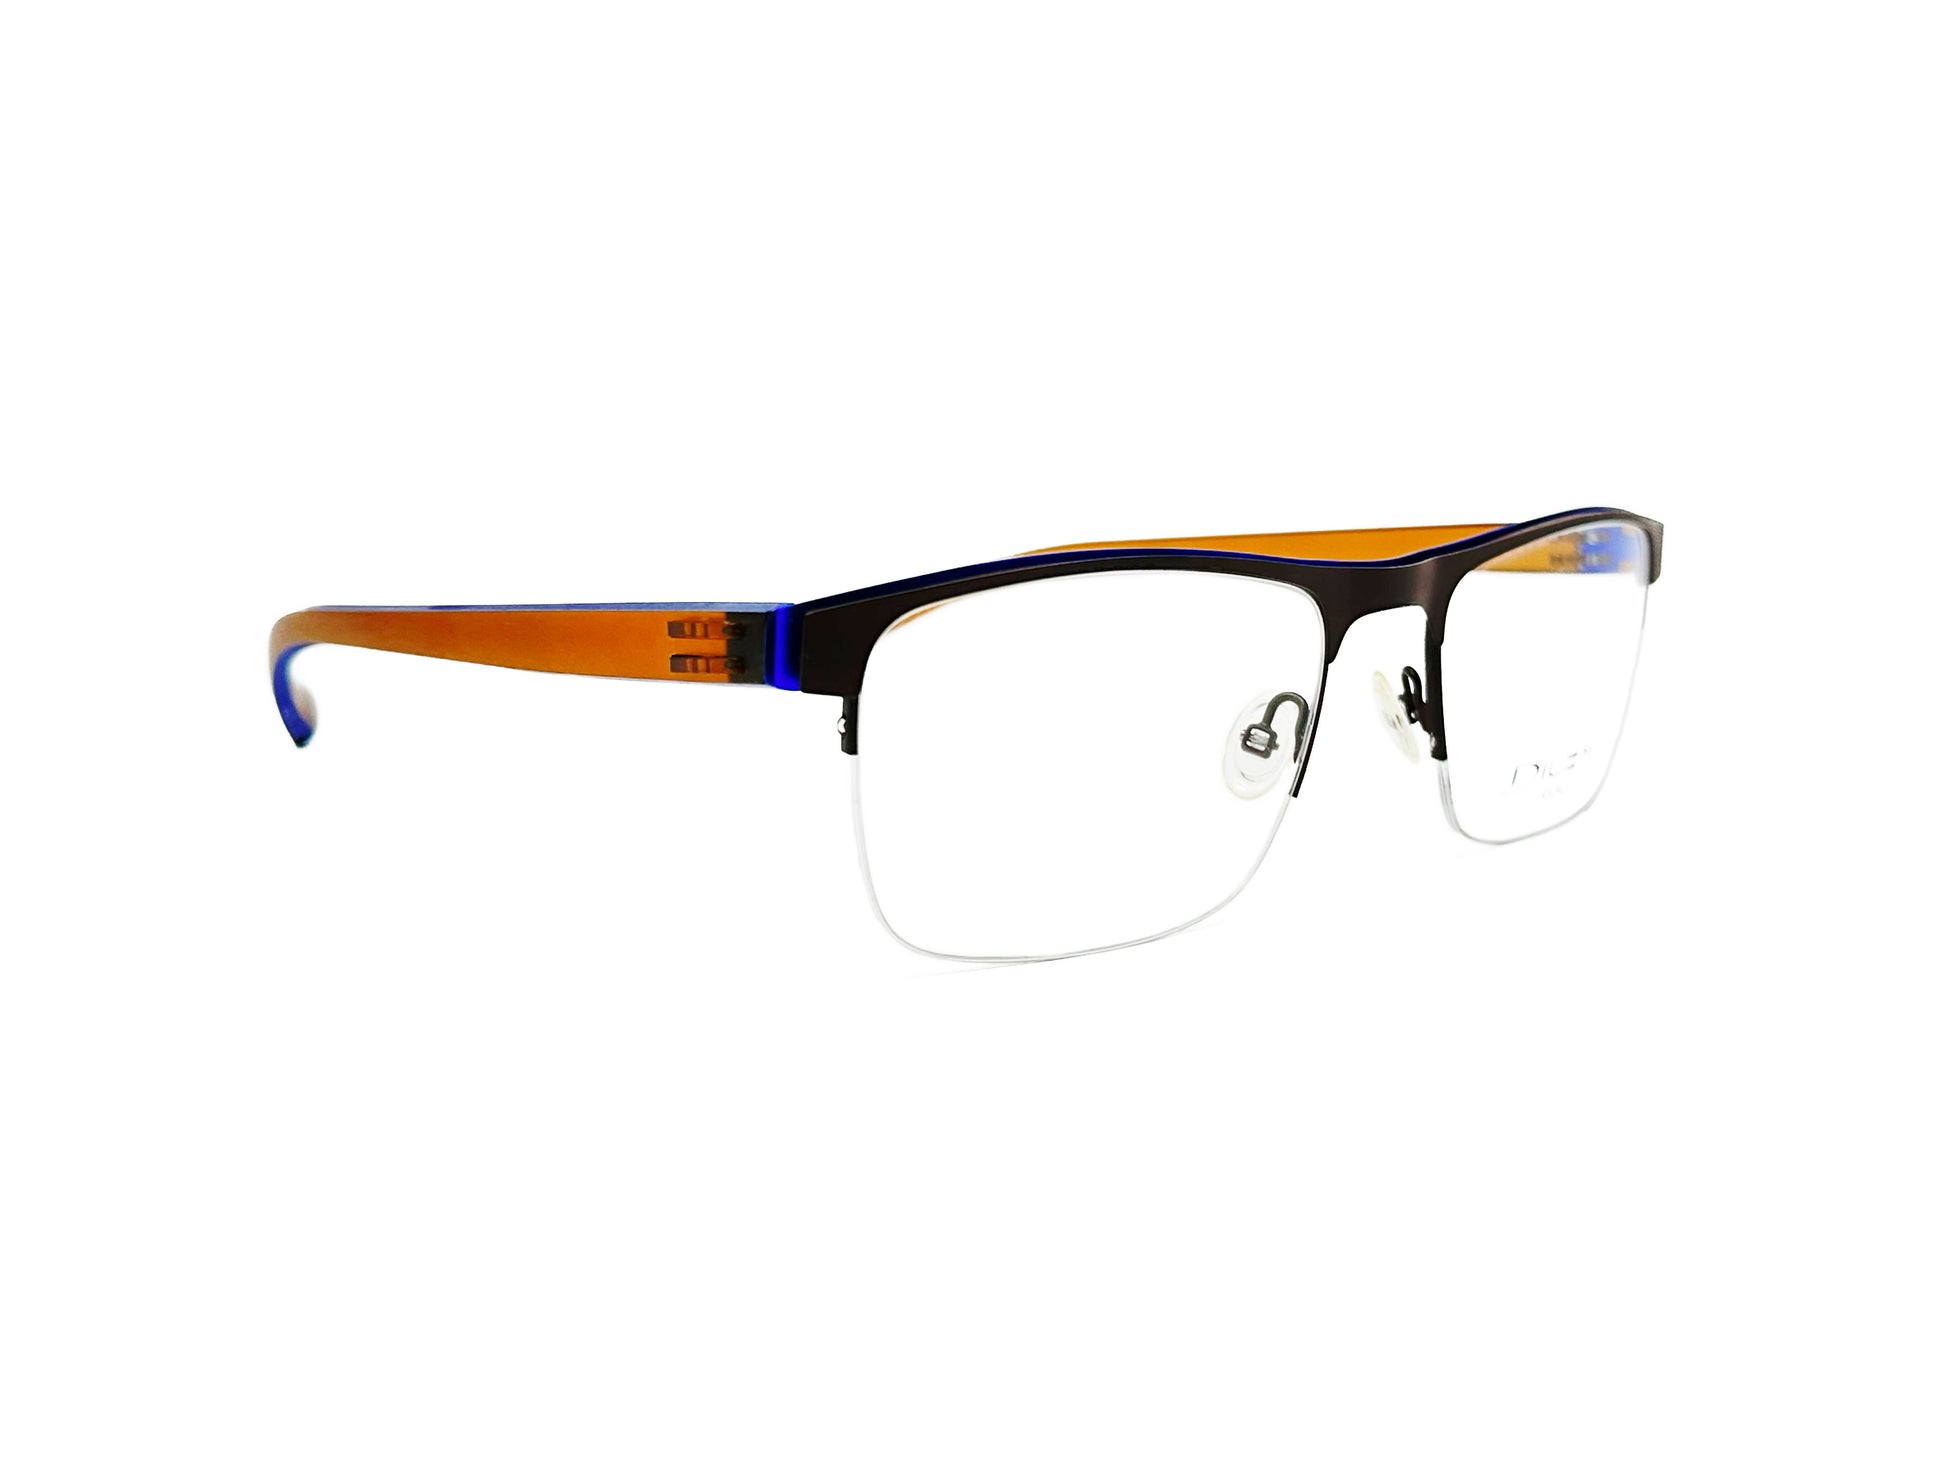 Dilem half-rim, rectangular, metal optical frame. Model: ZB533. Color: 2BD33 - Black with orange/blue temples. Side view.